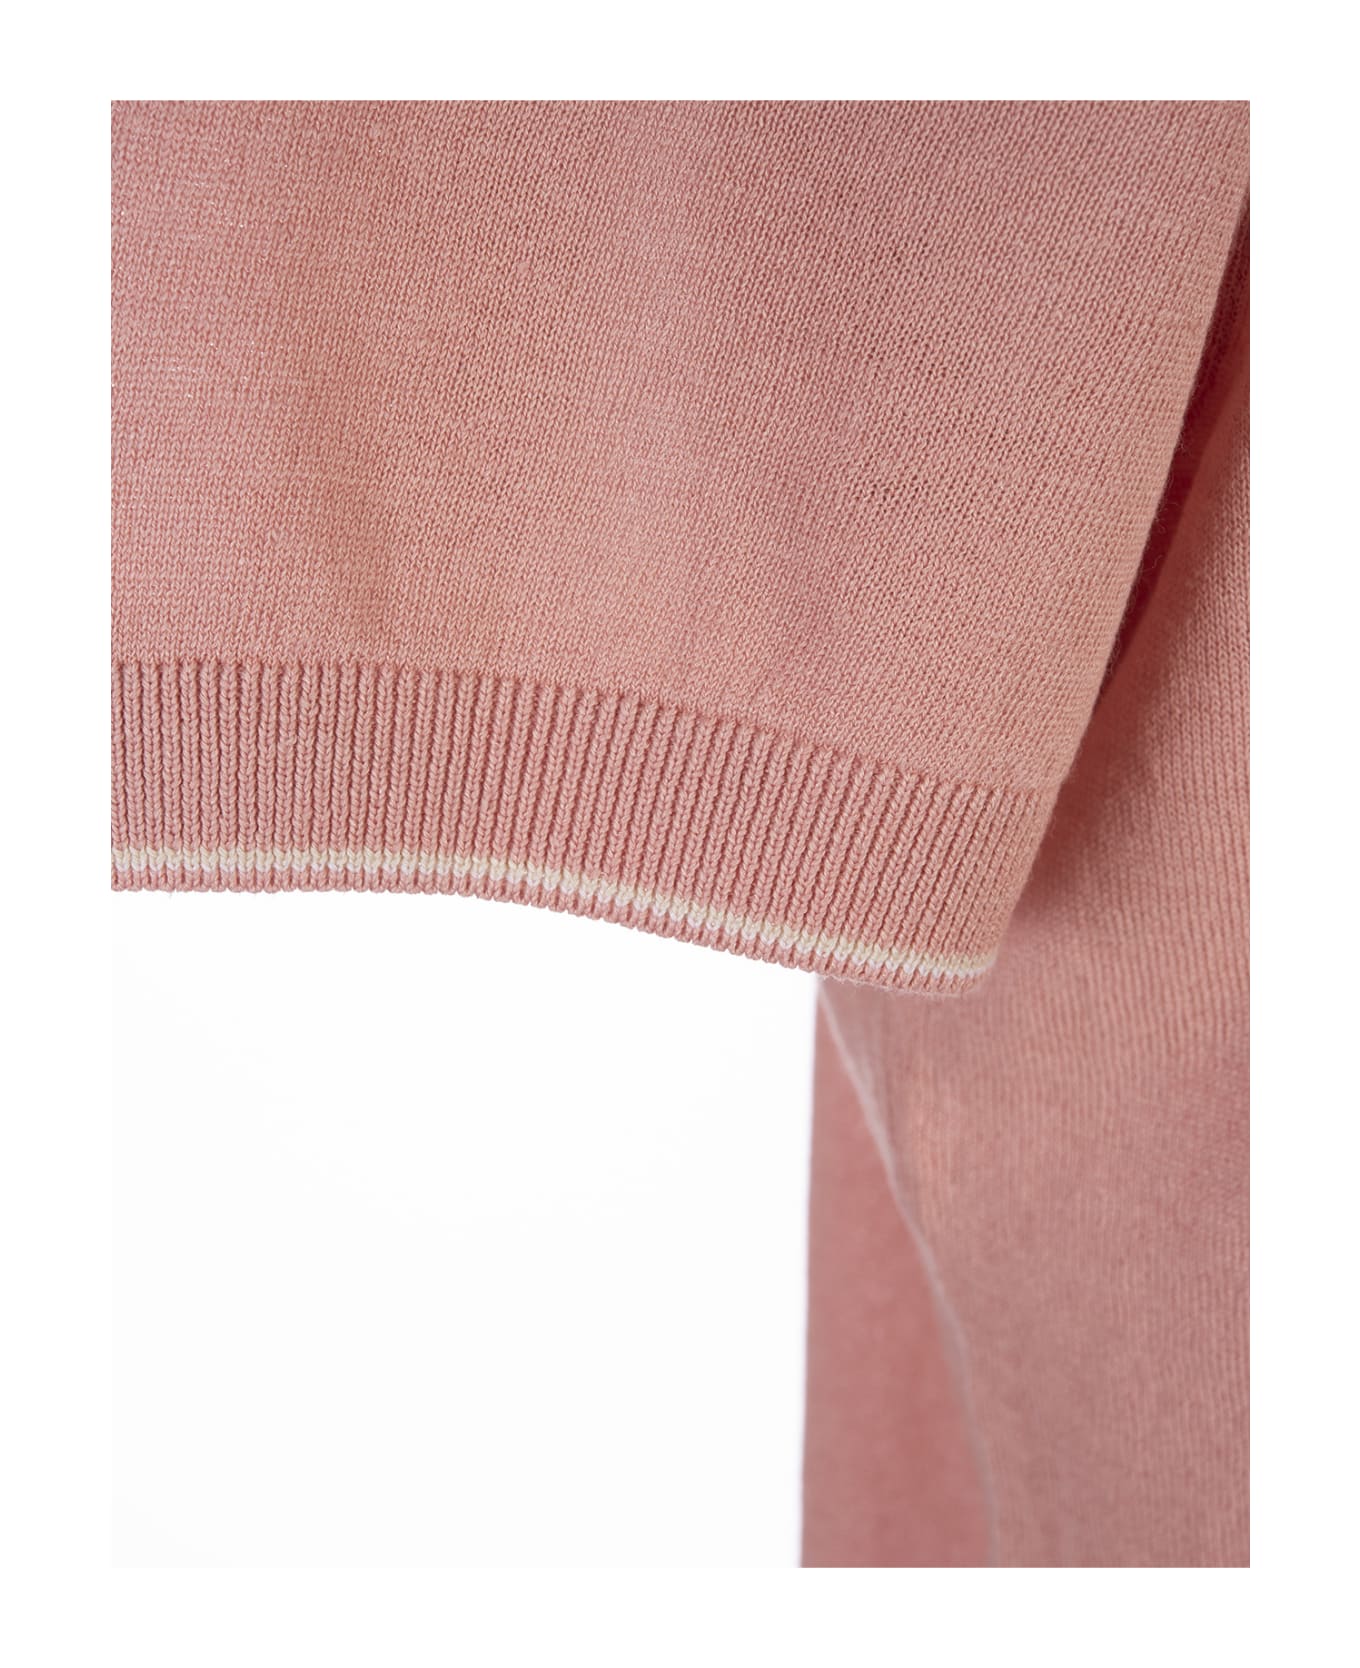 Hugo Boss Light Pink Linen Blend Sweater - Pink